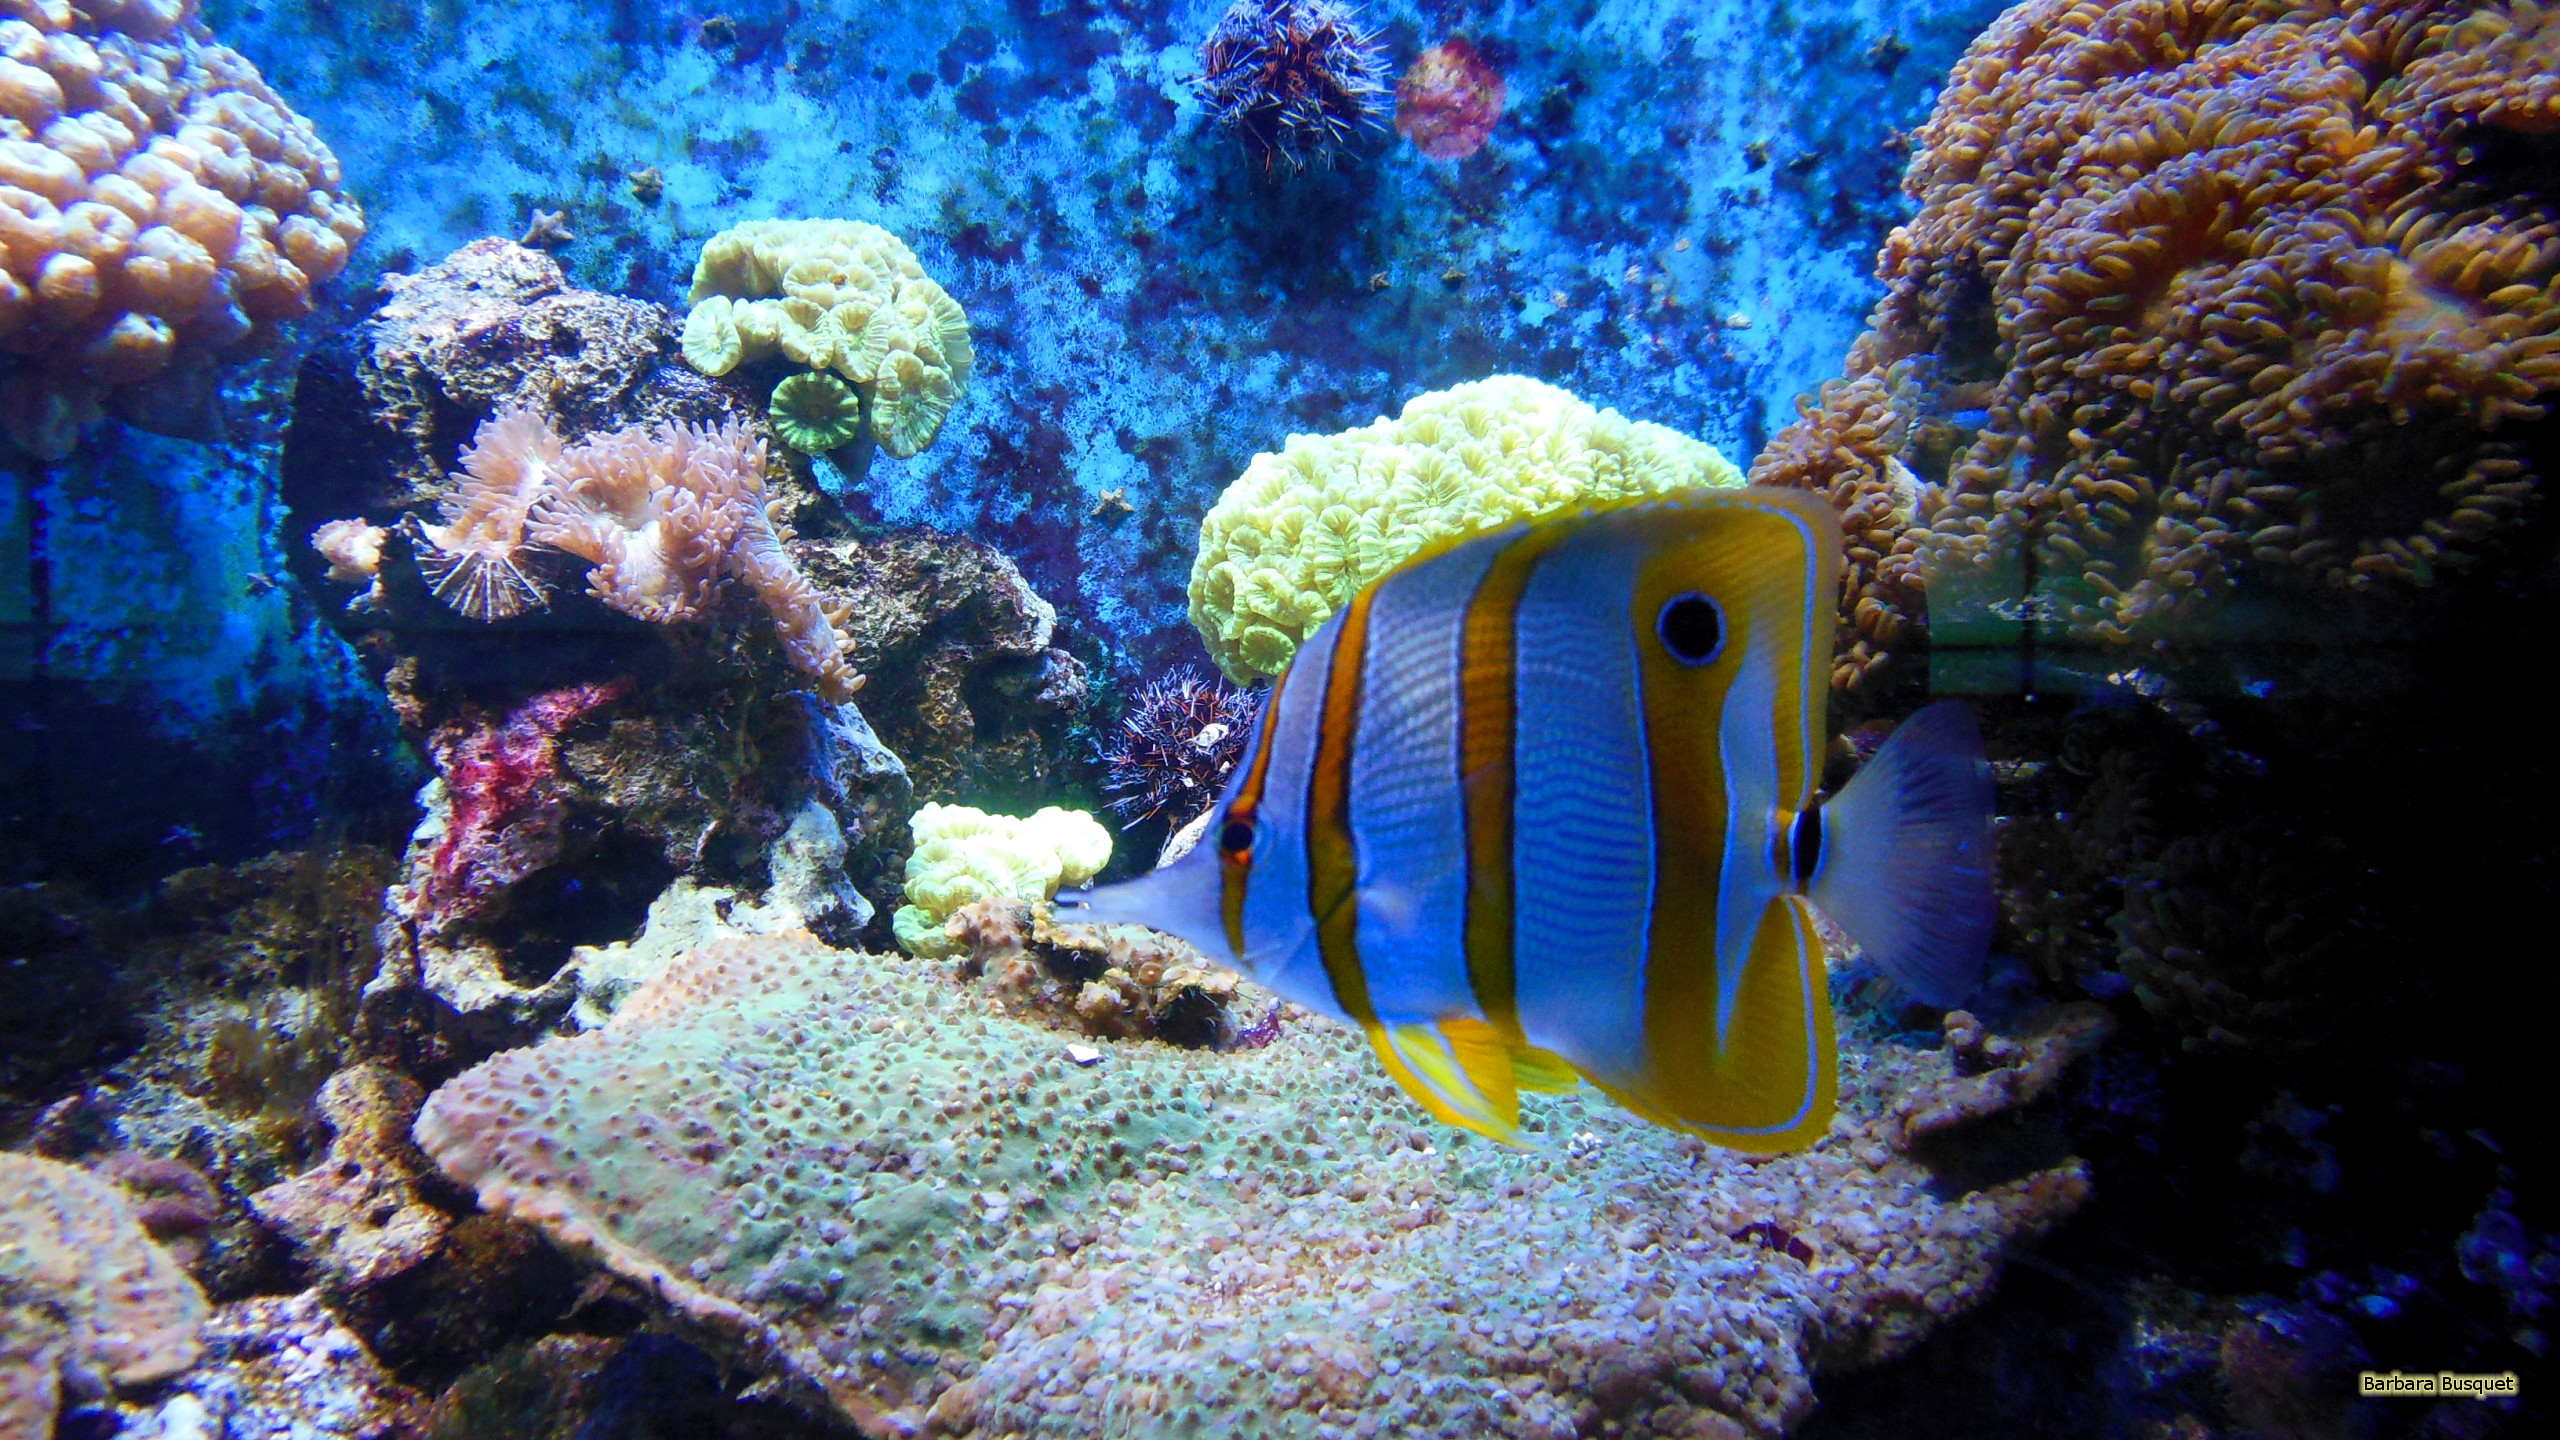 2560x1440 HD wallpaper Tropical fish in aquarium